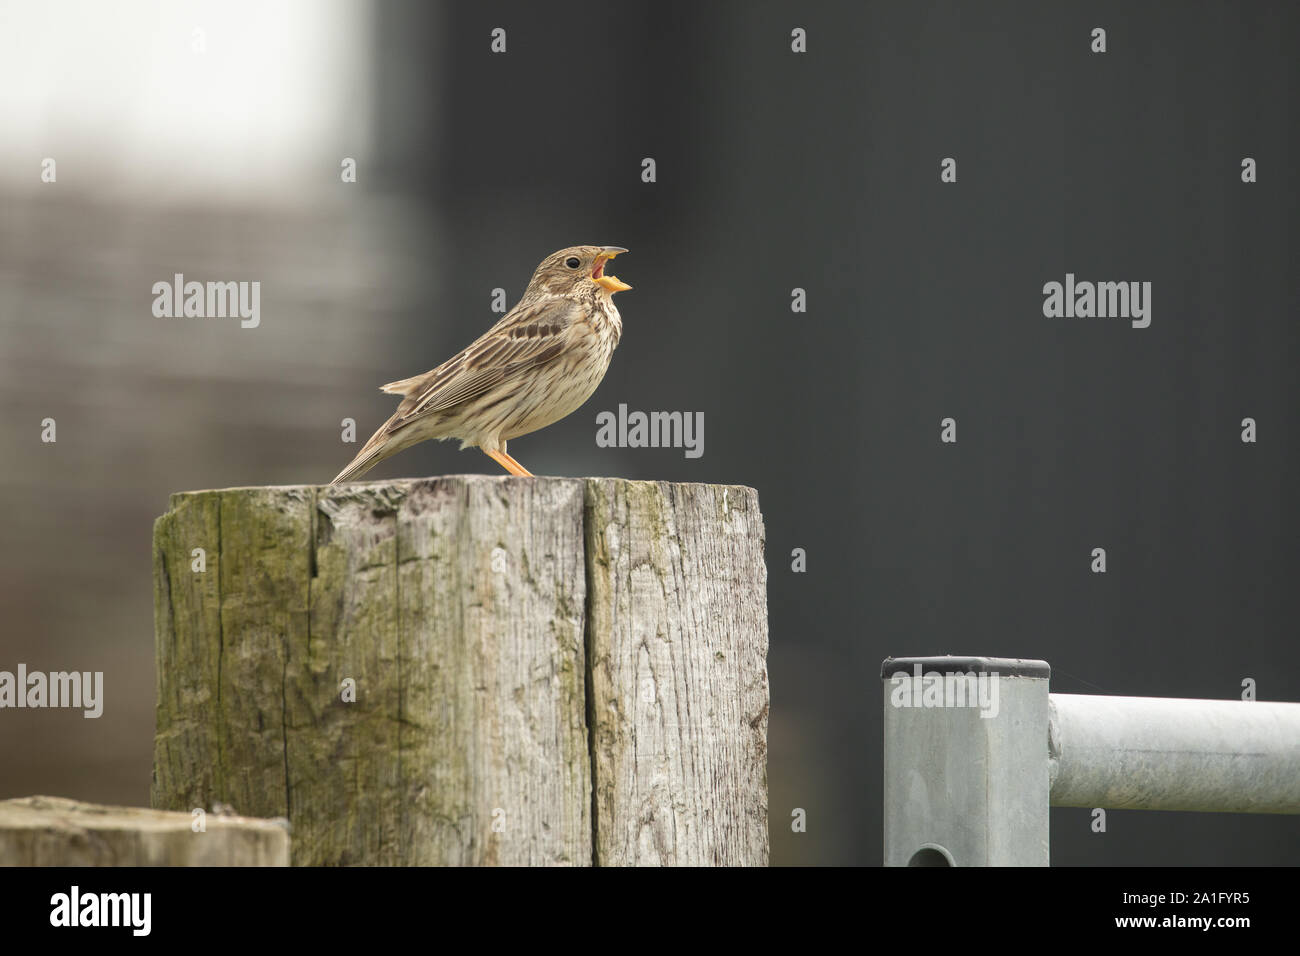 Bruant proyer mâle chantant sur un piquet de clôture. Un lieu typique pour voir cette une fois oiseaux des champs communs, avec sa caractéristique jangling appel. Banque D'Images